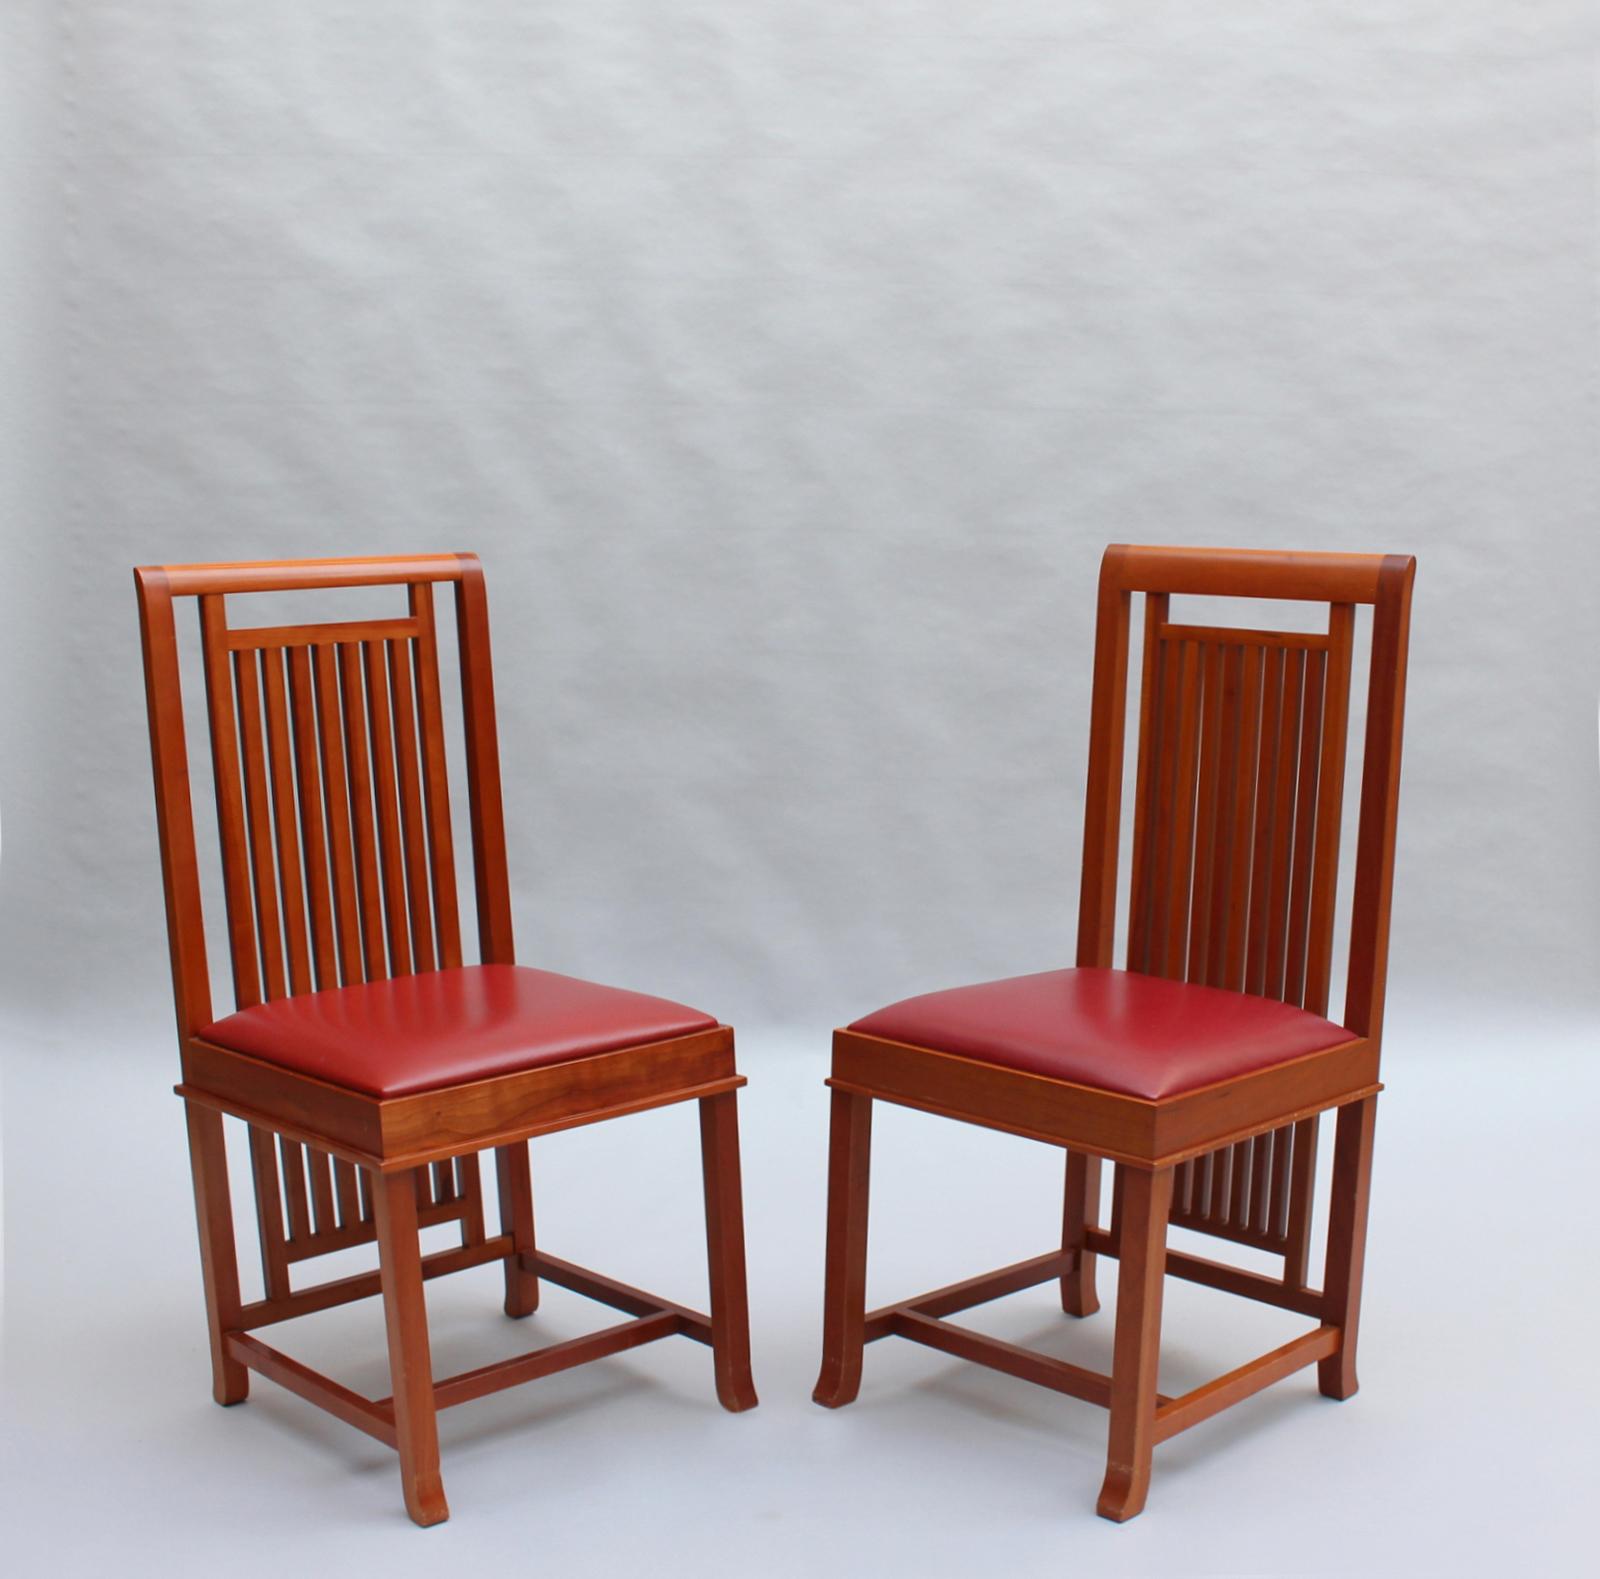 Frank Lloyd Wright - (en anglais)  Cassina édition 1992 - 2 chaises latérales en bois de cerisier, modèle 614 Coonley 2. 
